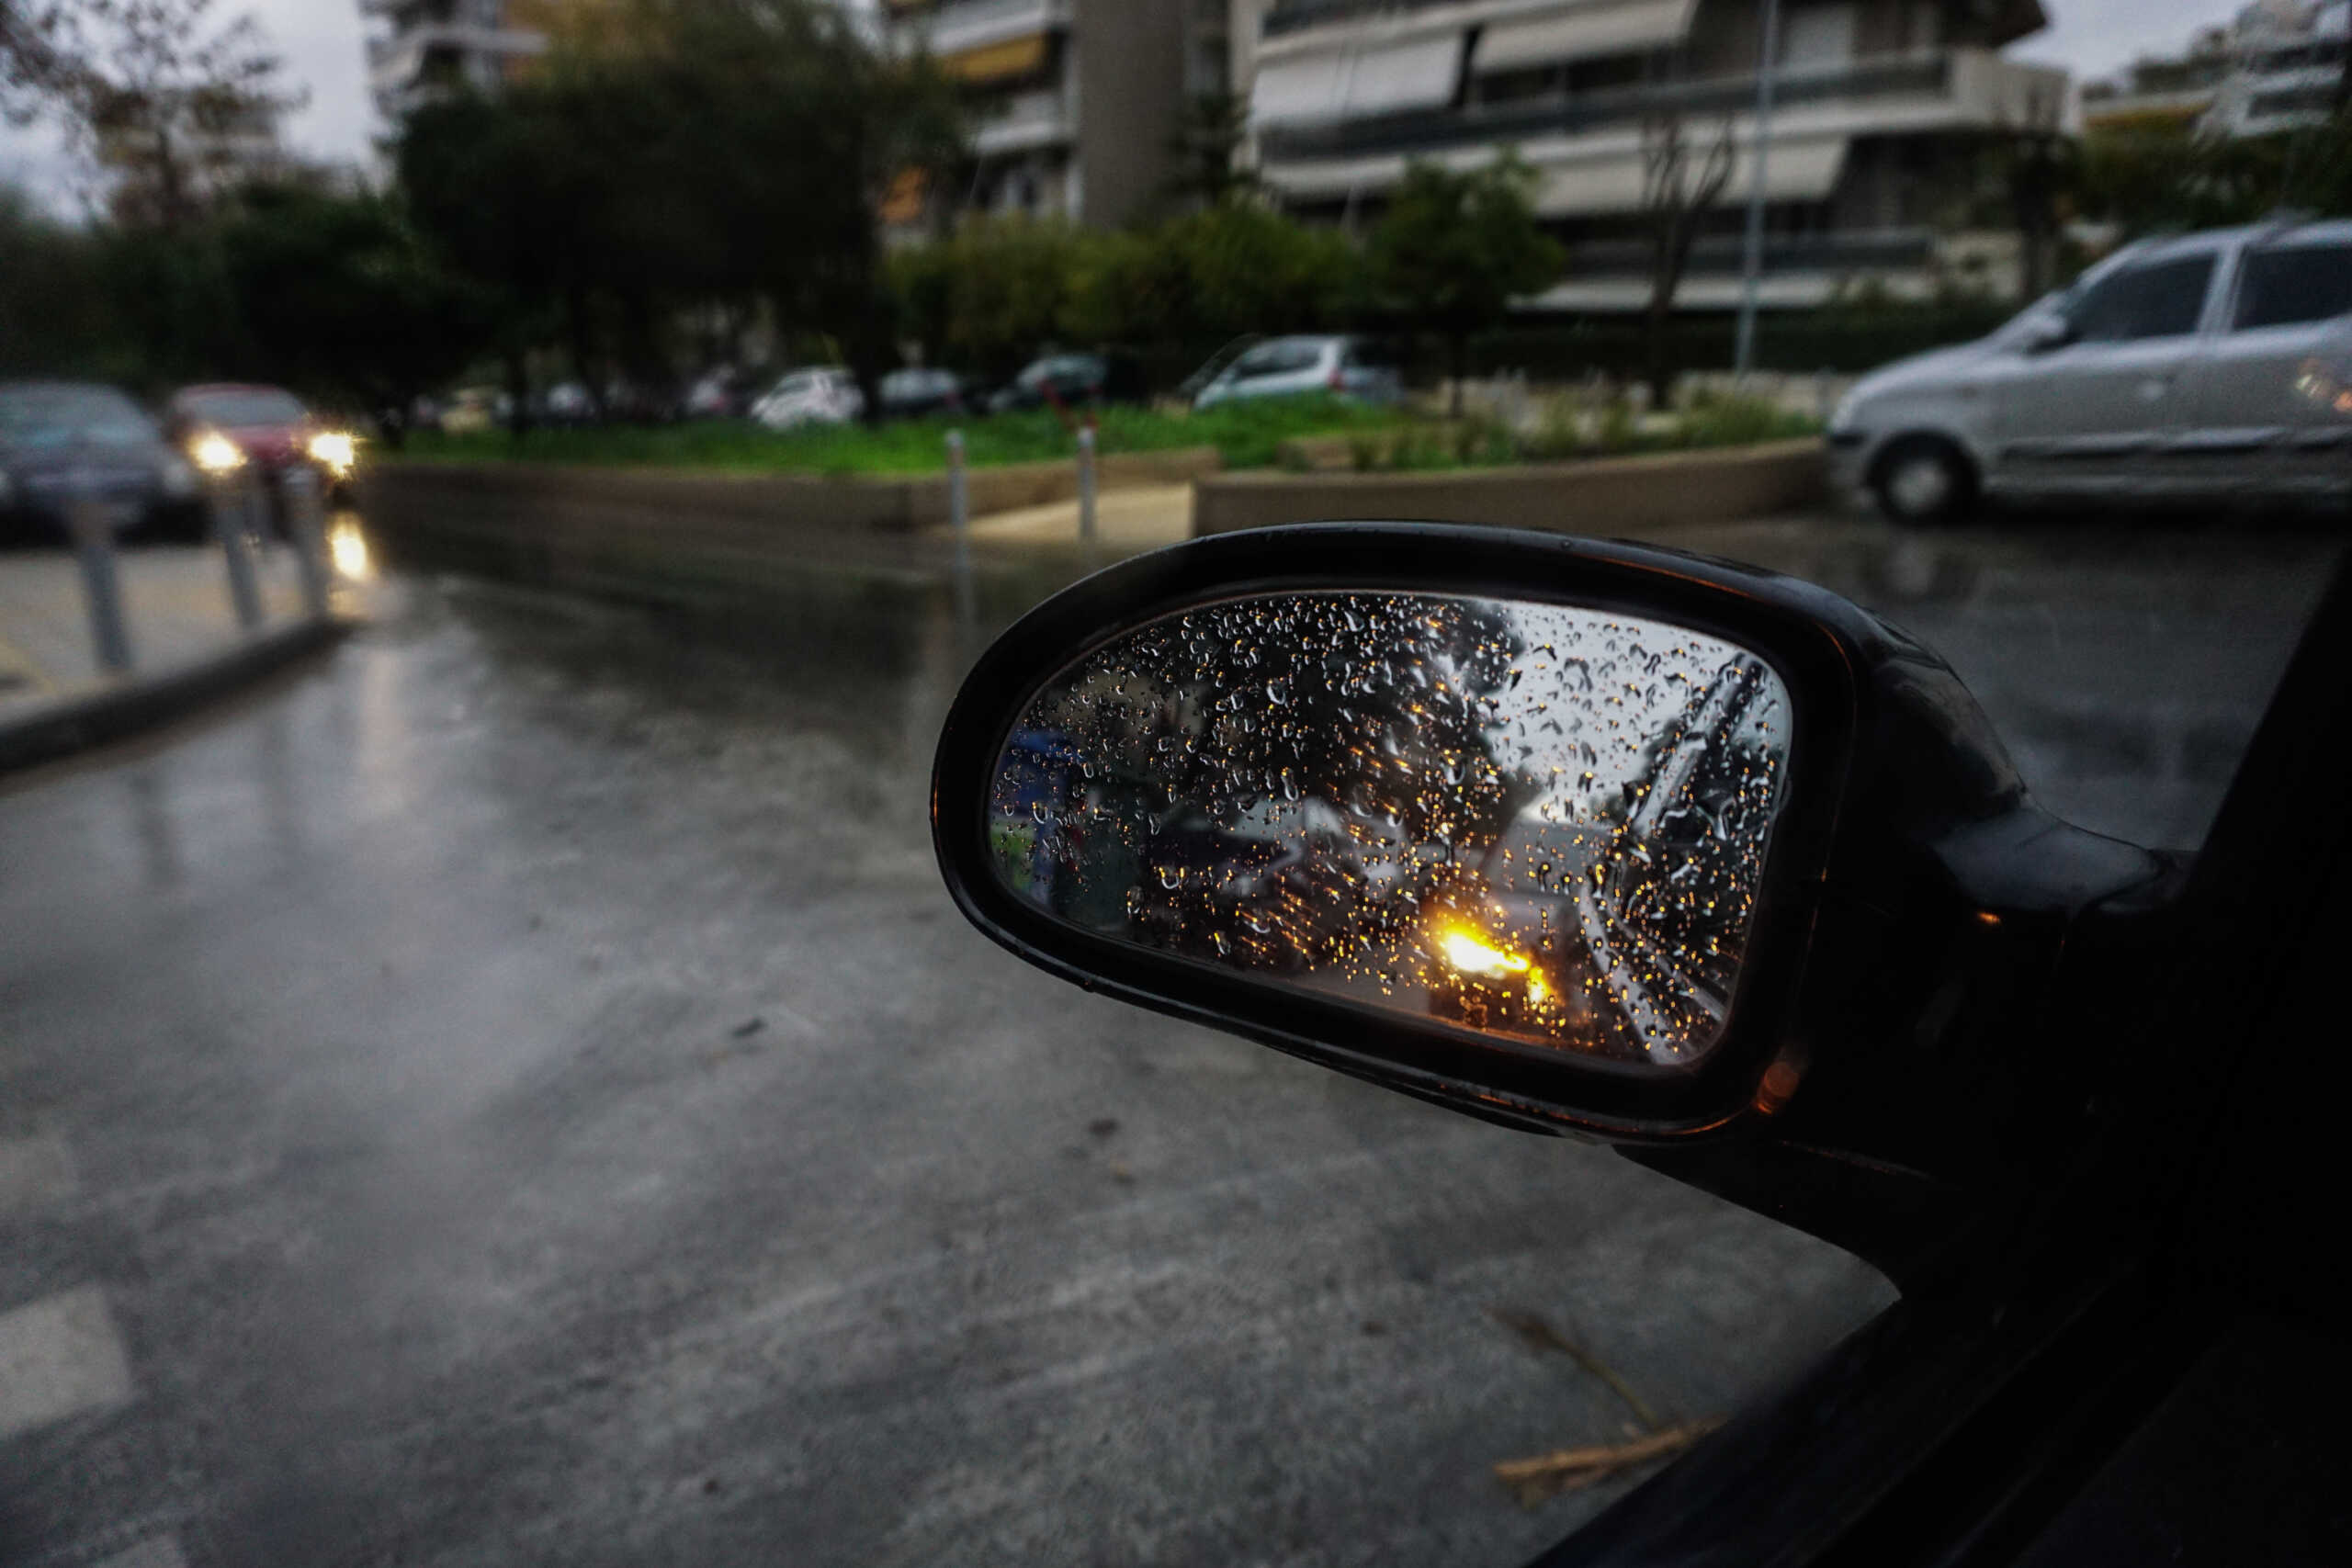 Θεσσαλονίκη: Δύο συλλήψεις για κλοπές σε παρκαρισμένα αυτοκίνητα – Ταυτοποιήθηκαν και δύο συνεργοί τους